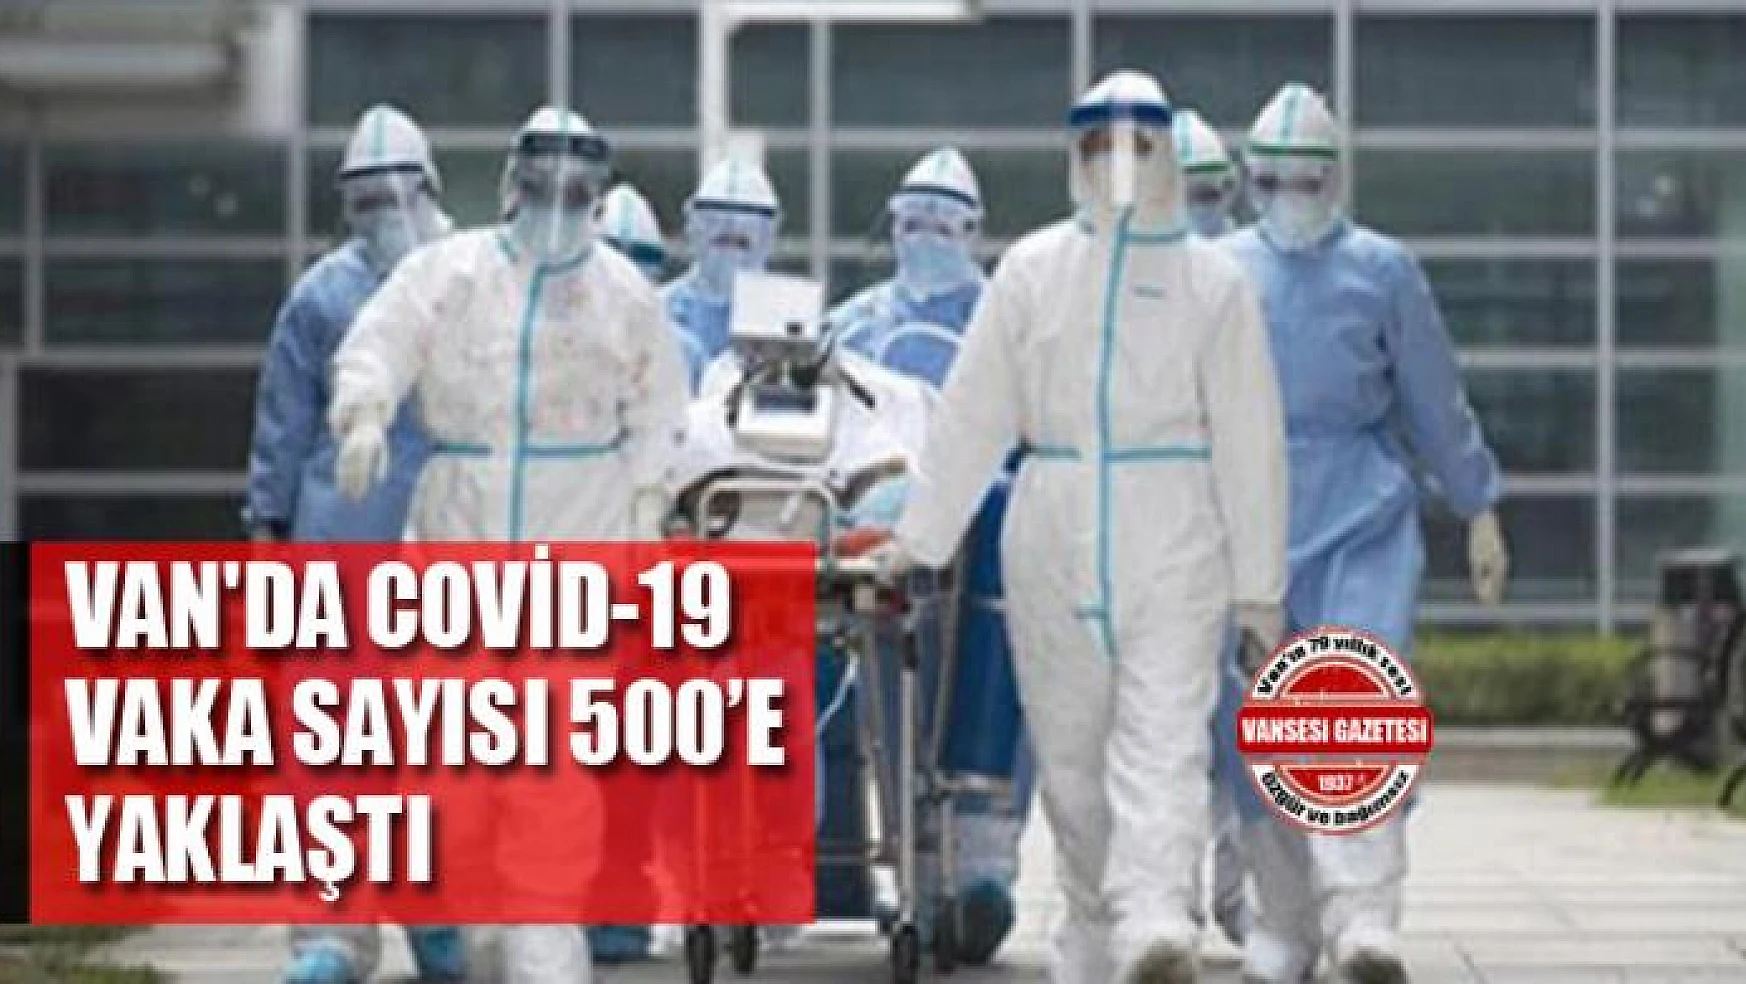 Van'da Covid-19 vaka sayısı 500'e yaklaştı